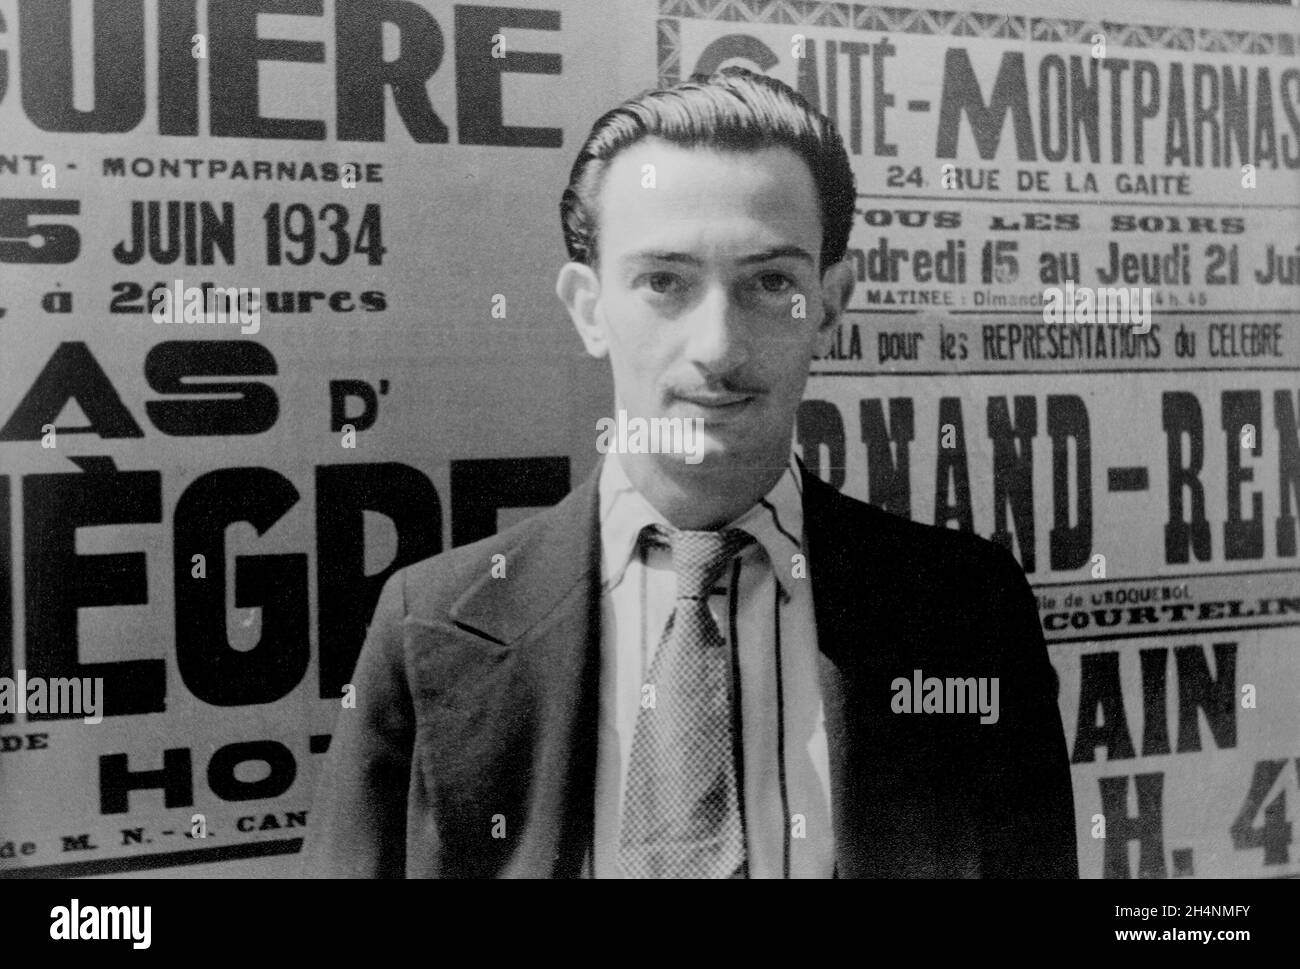 PARIS, FRANKREICH - 29. November 1939 - Porträt des jungen surrealistischen spanischen Künstlers Salvador Dali - Foto: Geopix/Carl van Vechten Stockfoto